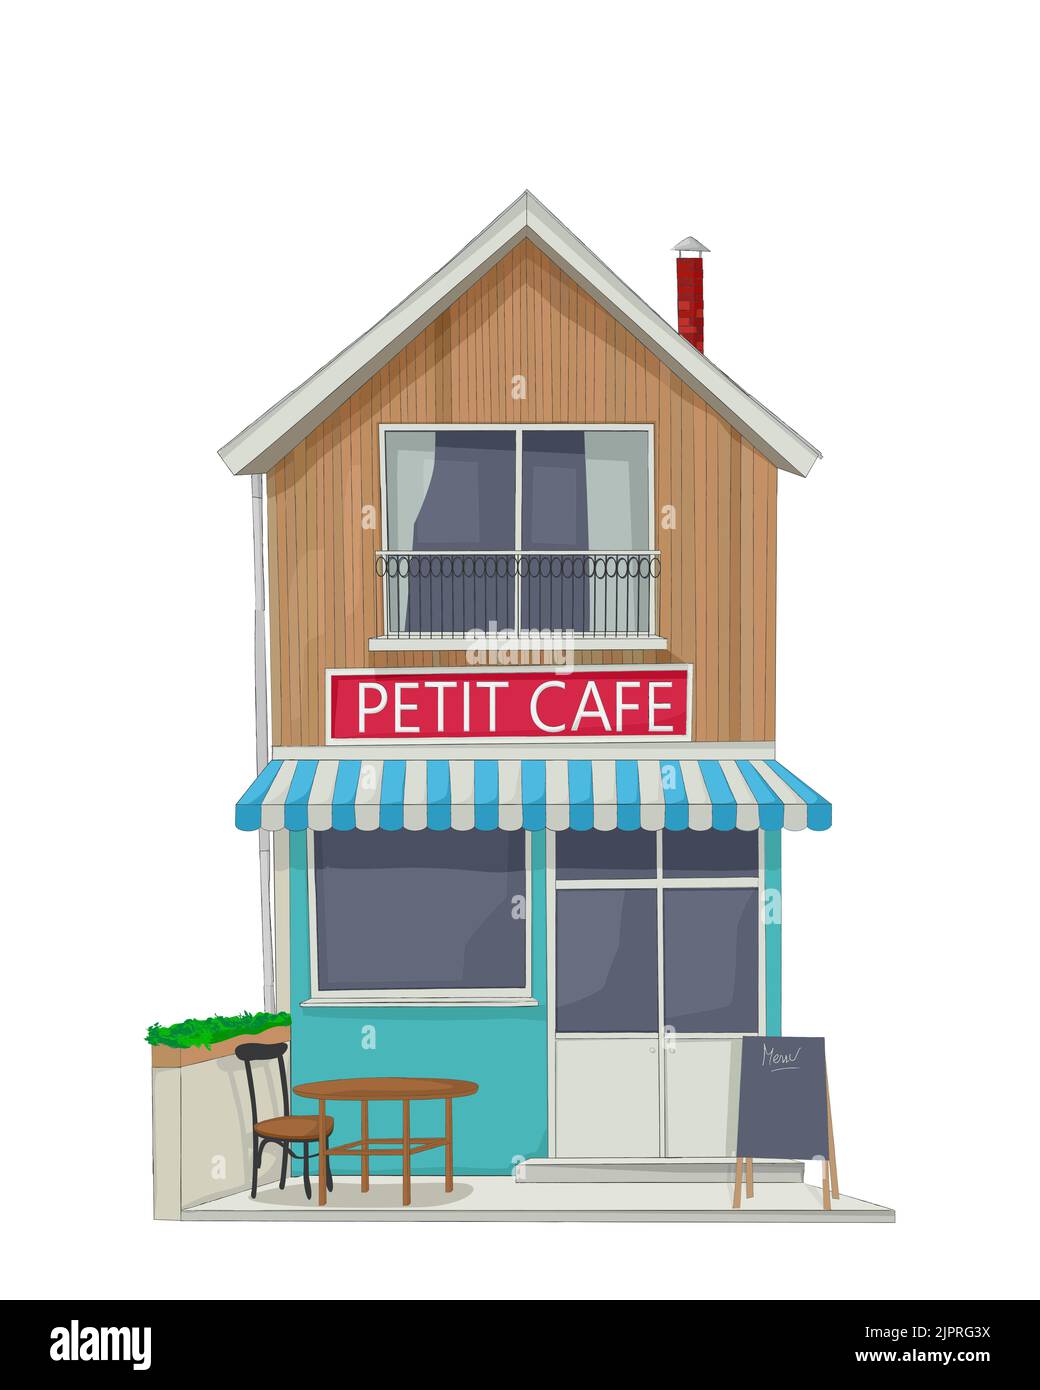 Vue sur la rue d'un petit café de rue de ville avec terrasse, menu, table et chaise, croquis vectoriel Banque D'Images